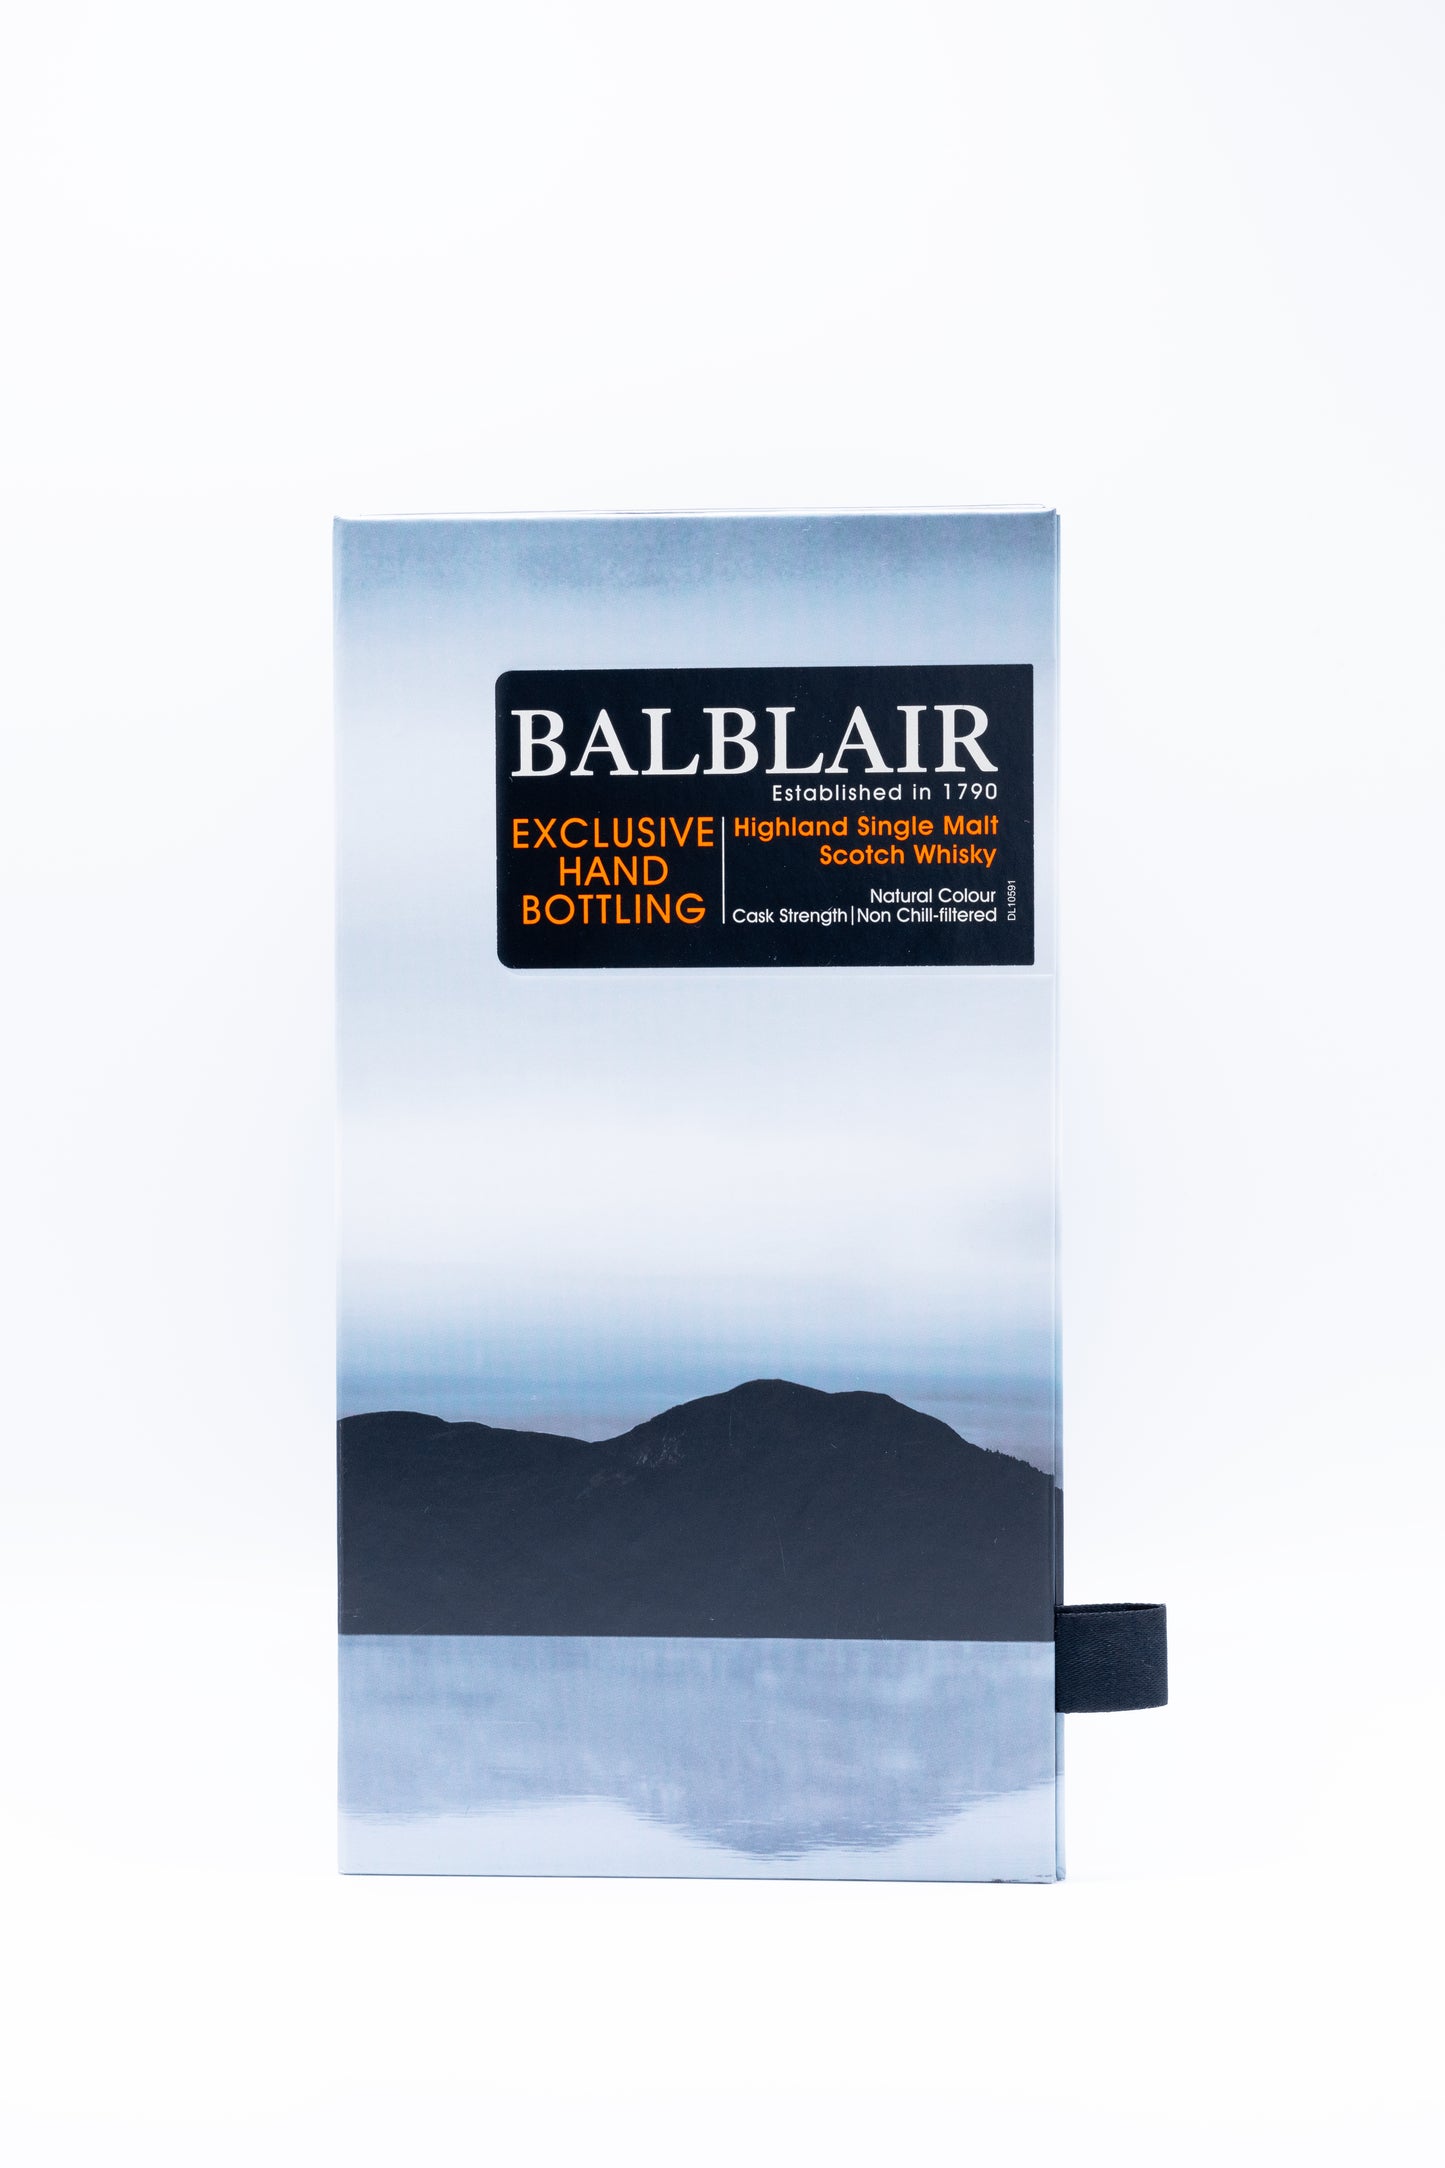 Balblair 2015 Hand Bottled Cask Strength